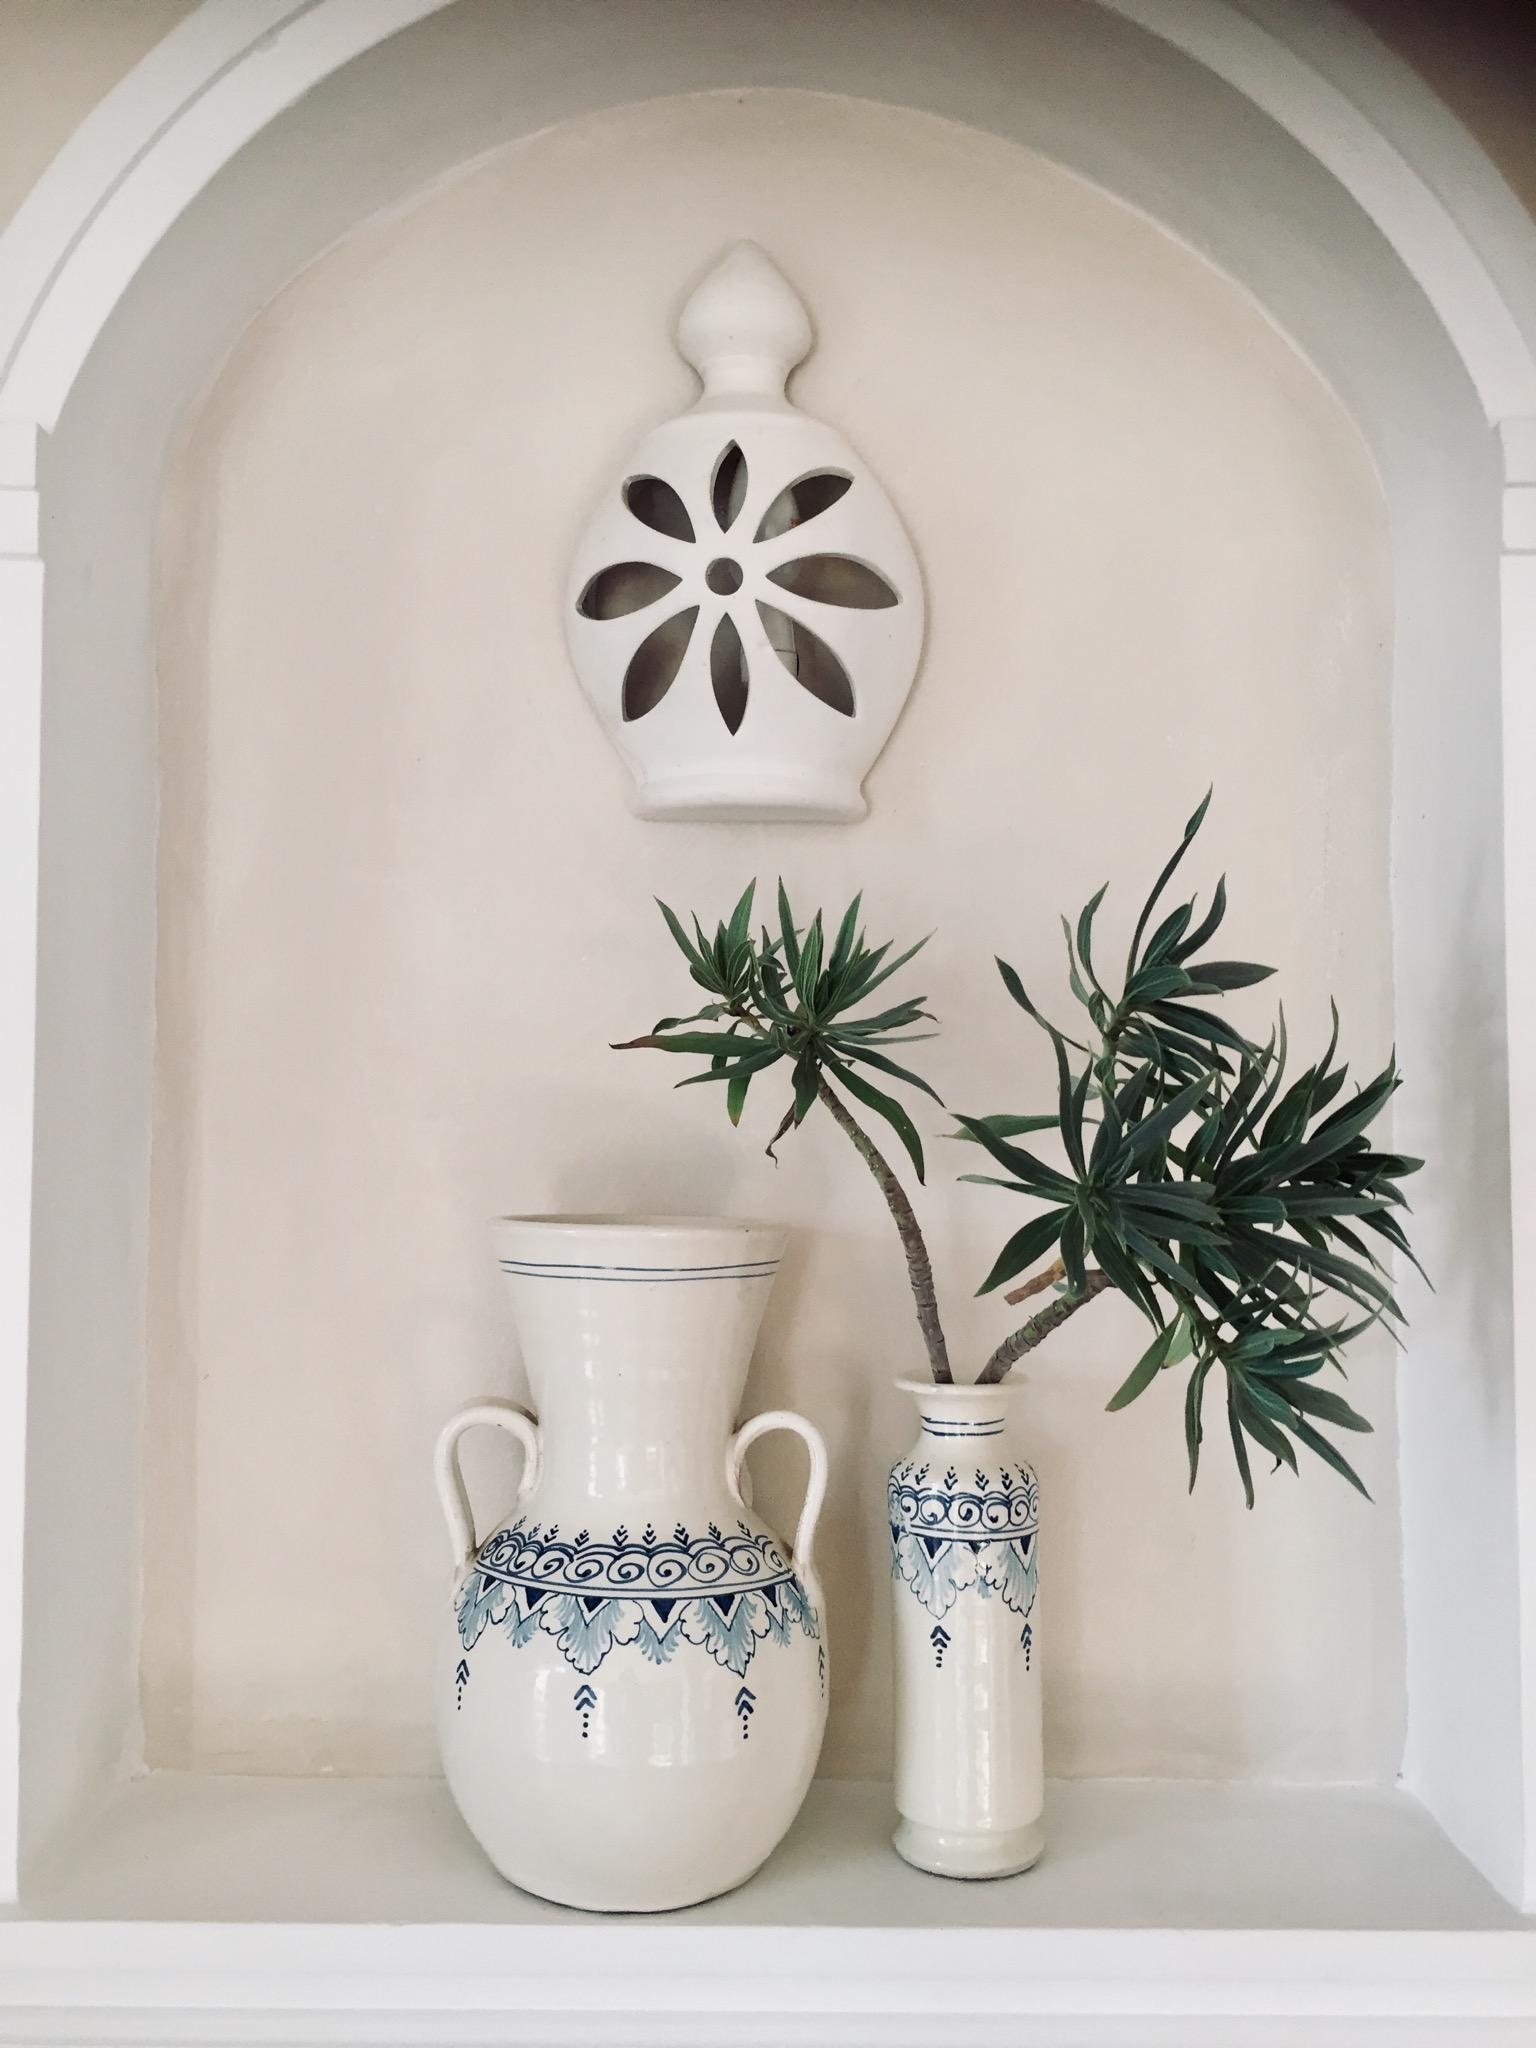 Wandnische mit handbemalten Vasen und Lampe als Mitbringsel aus Spanienurlaub #keramik #vase #pflanzenliebe #wandlampe 